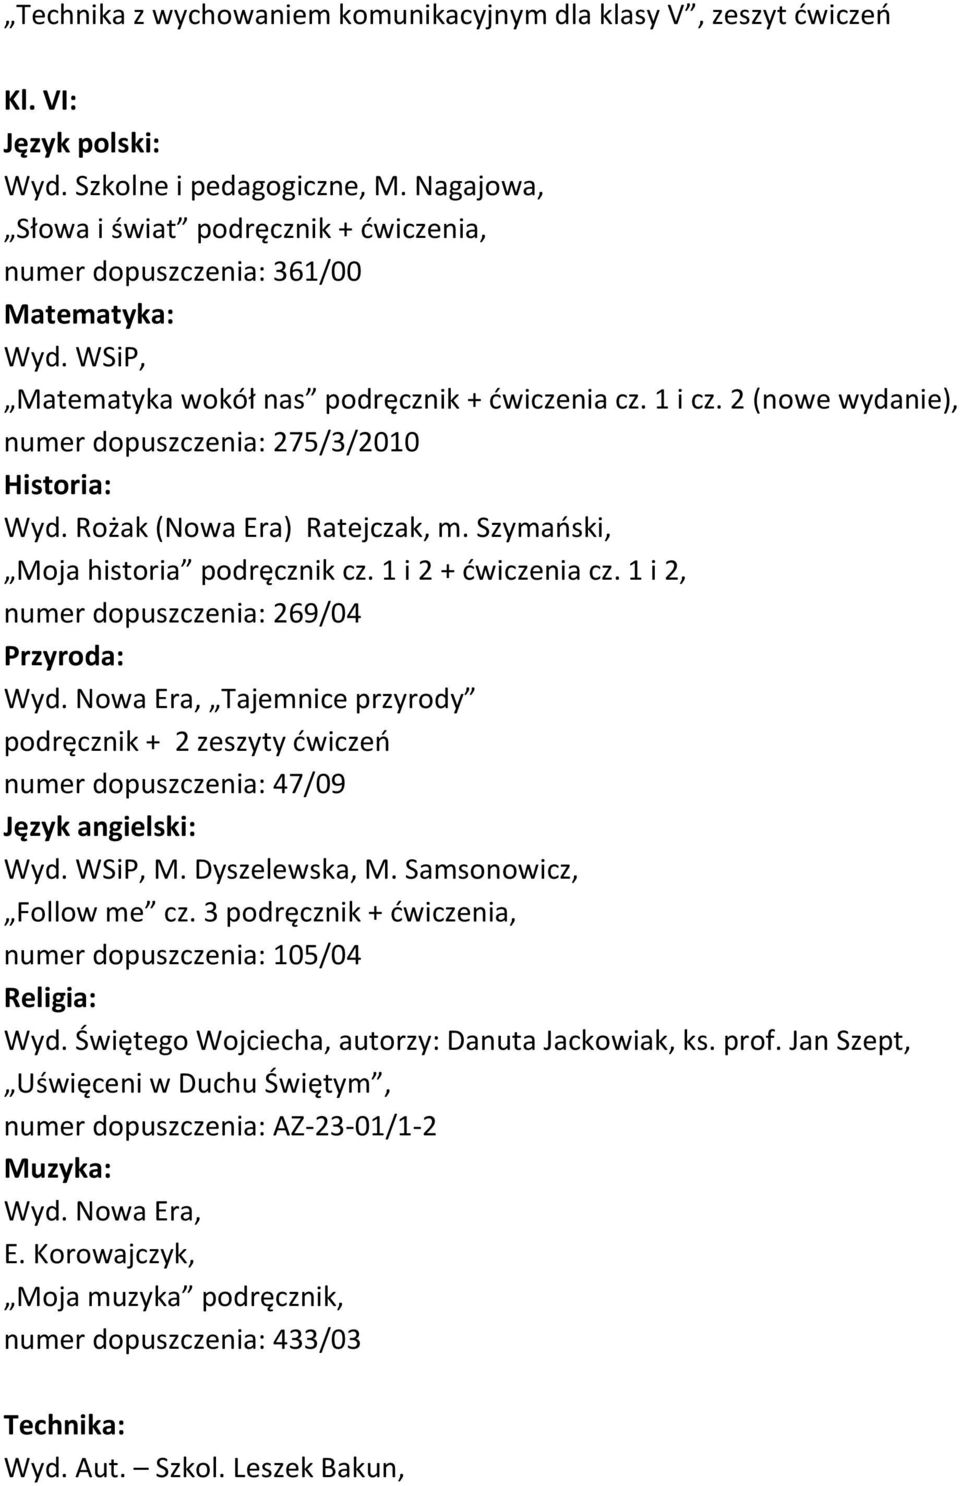 2 (nowe wydanie), numer dopuszczenia: 275/3/2010 Historia: Wyd. Rożak (Nowa Era) Ratejczak, m. Szymański, Moja historia podręcznik cz. 1 i 2 + ćwiczenia cz.